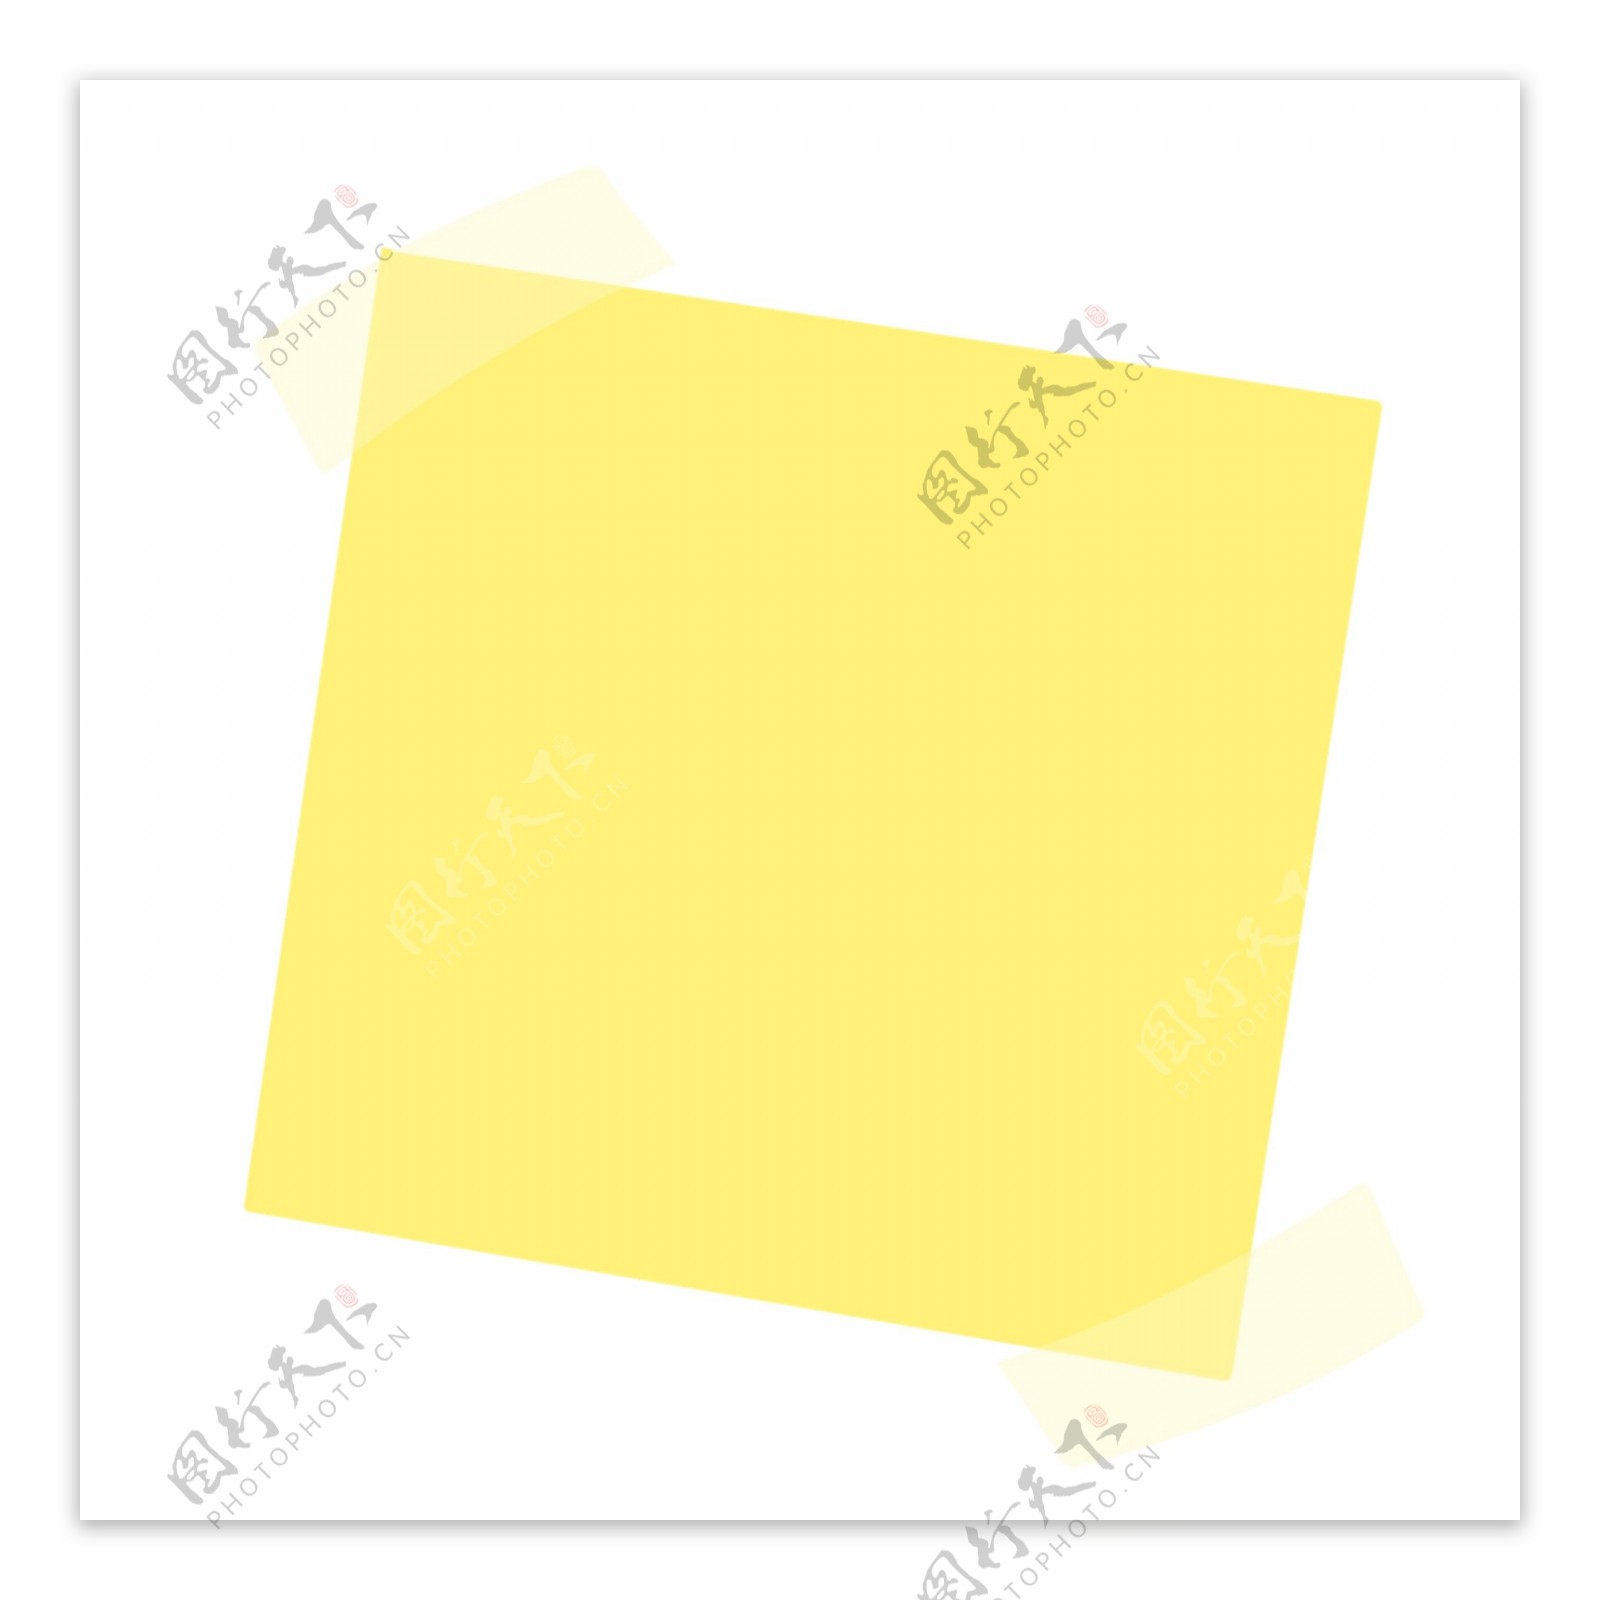 一张黄色纸片